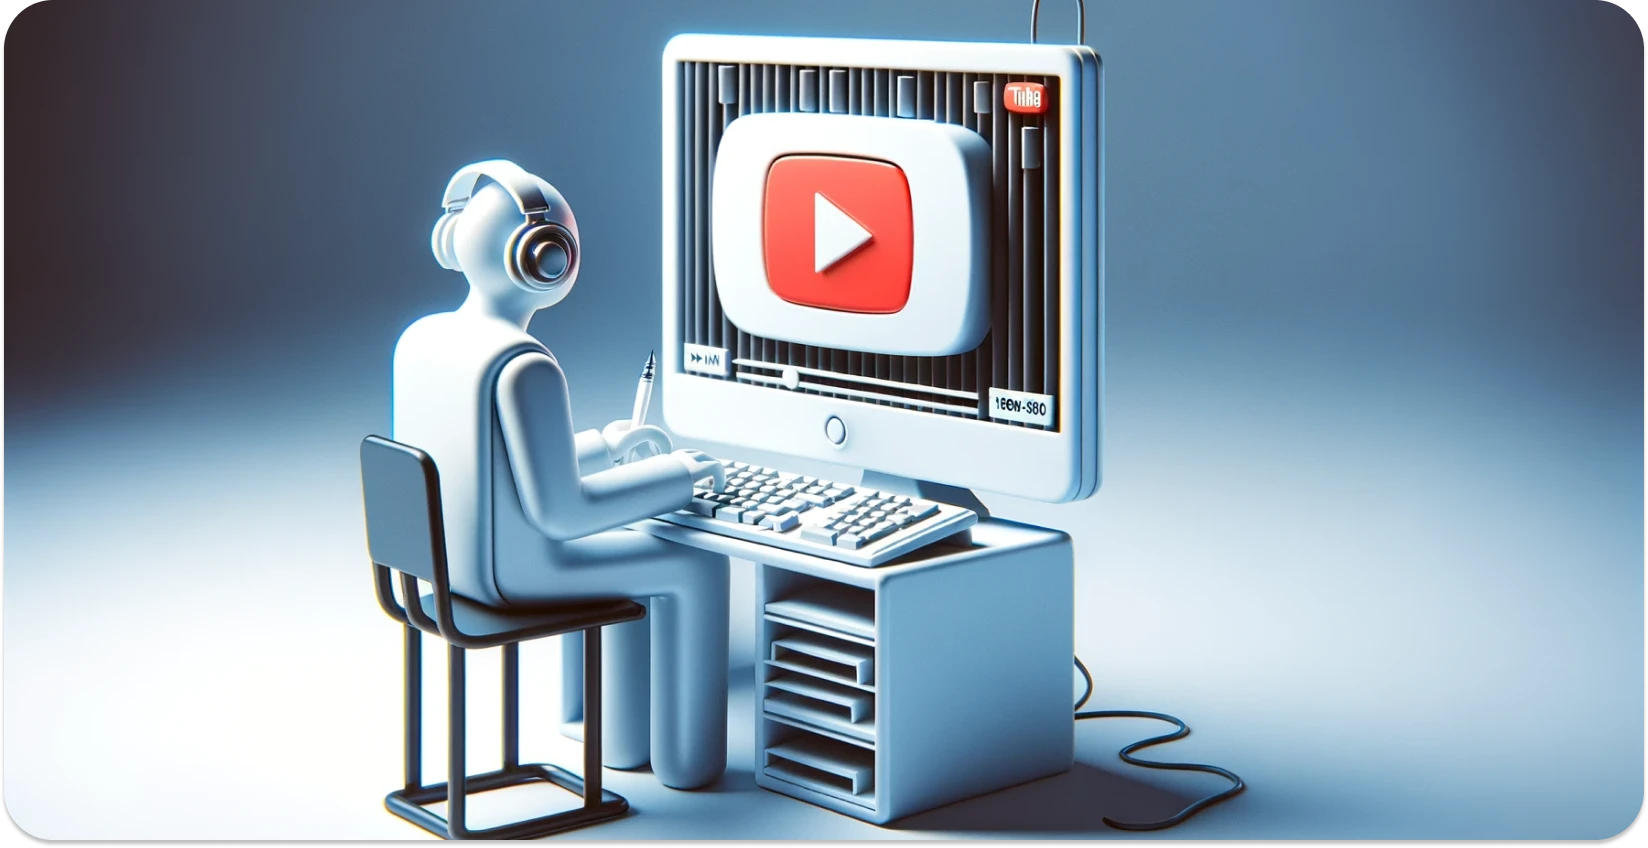 Transkripsiyona odaklanan, YouTube arayüzlü bir bilgisayar kullanan bir kişinin stilize edilmiş çizimi.